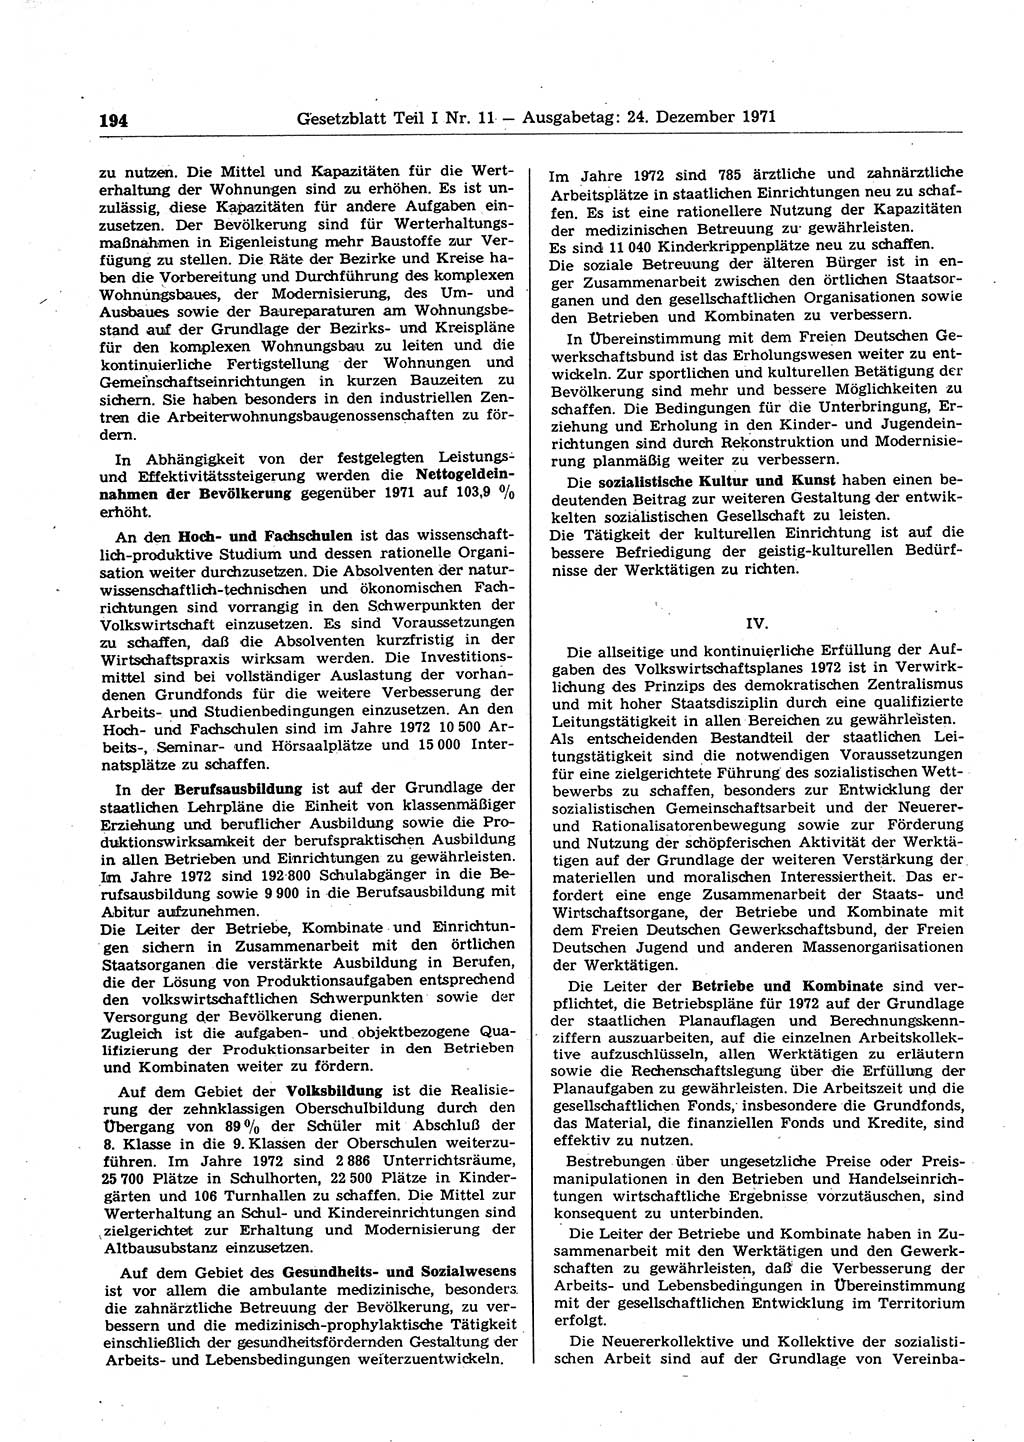 Gesetzblatt (GBl.) der Deutschen Demokratischen Republik (DDR) Teil Ⅰ 1971, Seite 194 (GBl. DDR Ⅰ 1971, S. 194)